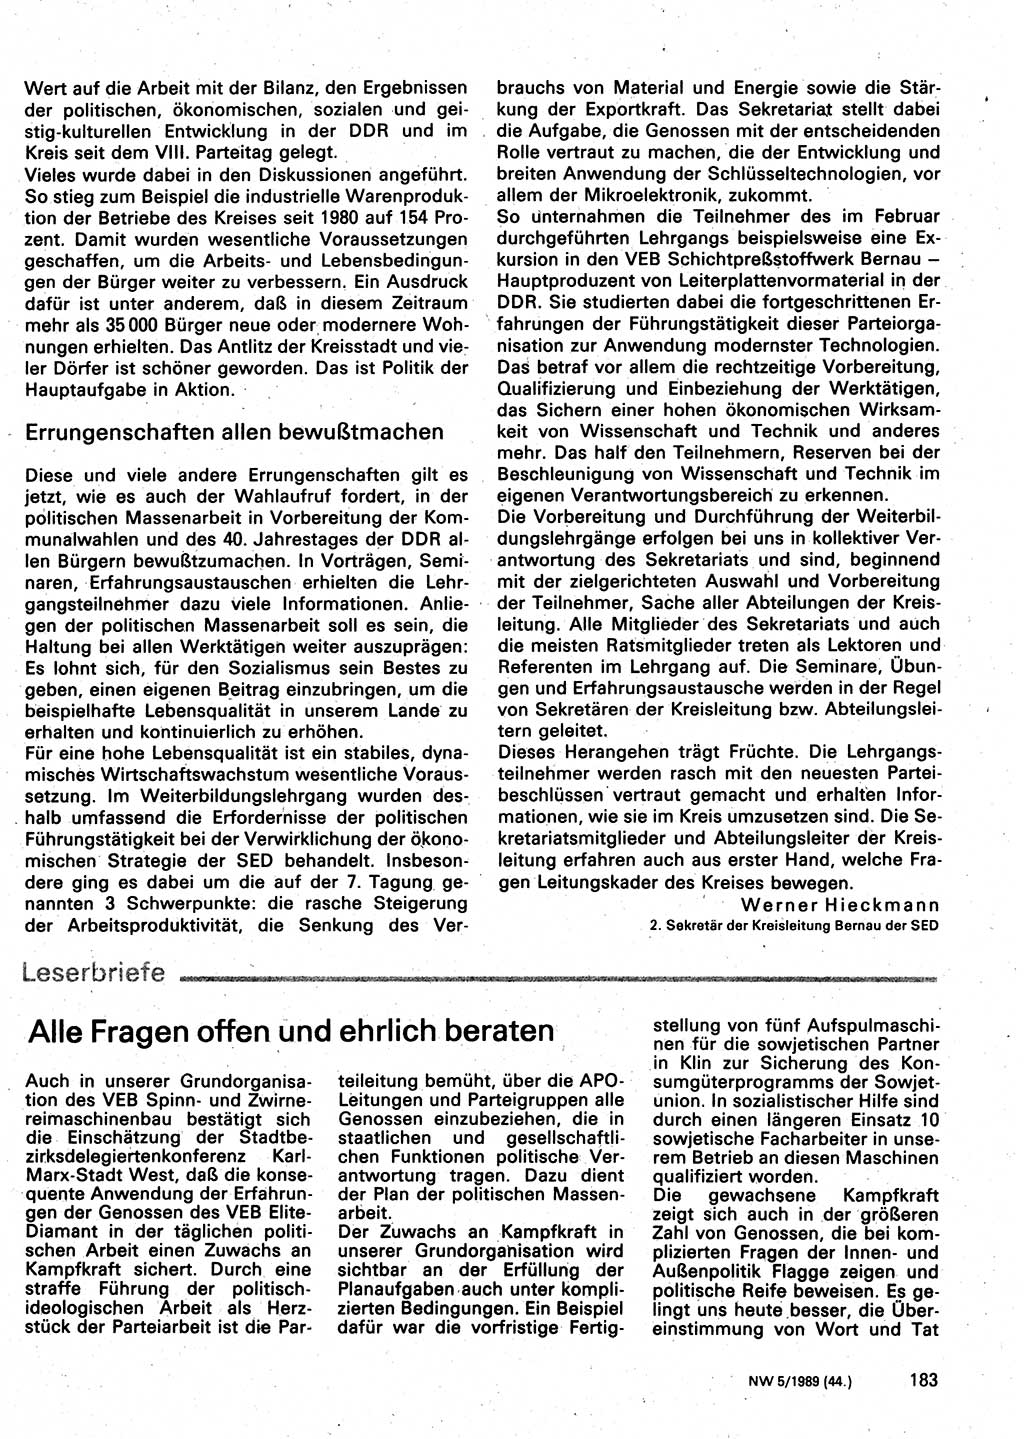 Neuer Weg (NW), Organ des Zentralkomitees (ZK) der SED (Sozialistische Einheitspartei Deutschlands) für Fragen des Parteilebens, 44. Jahrgang [Deutsche Demokratische Republik (DDR)] 1989, Seite 183 (NW ZK SED DDR 1989, S. 183)